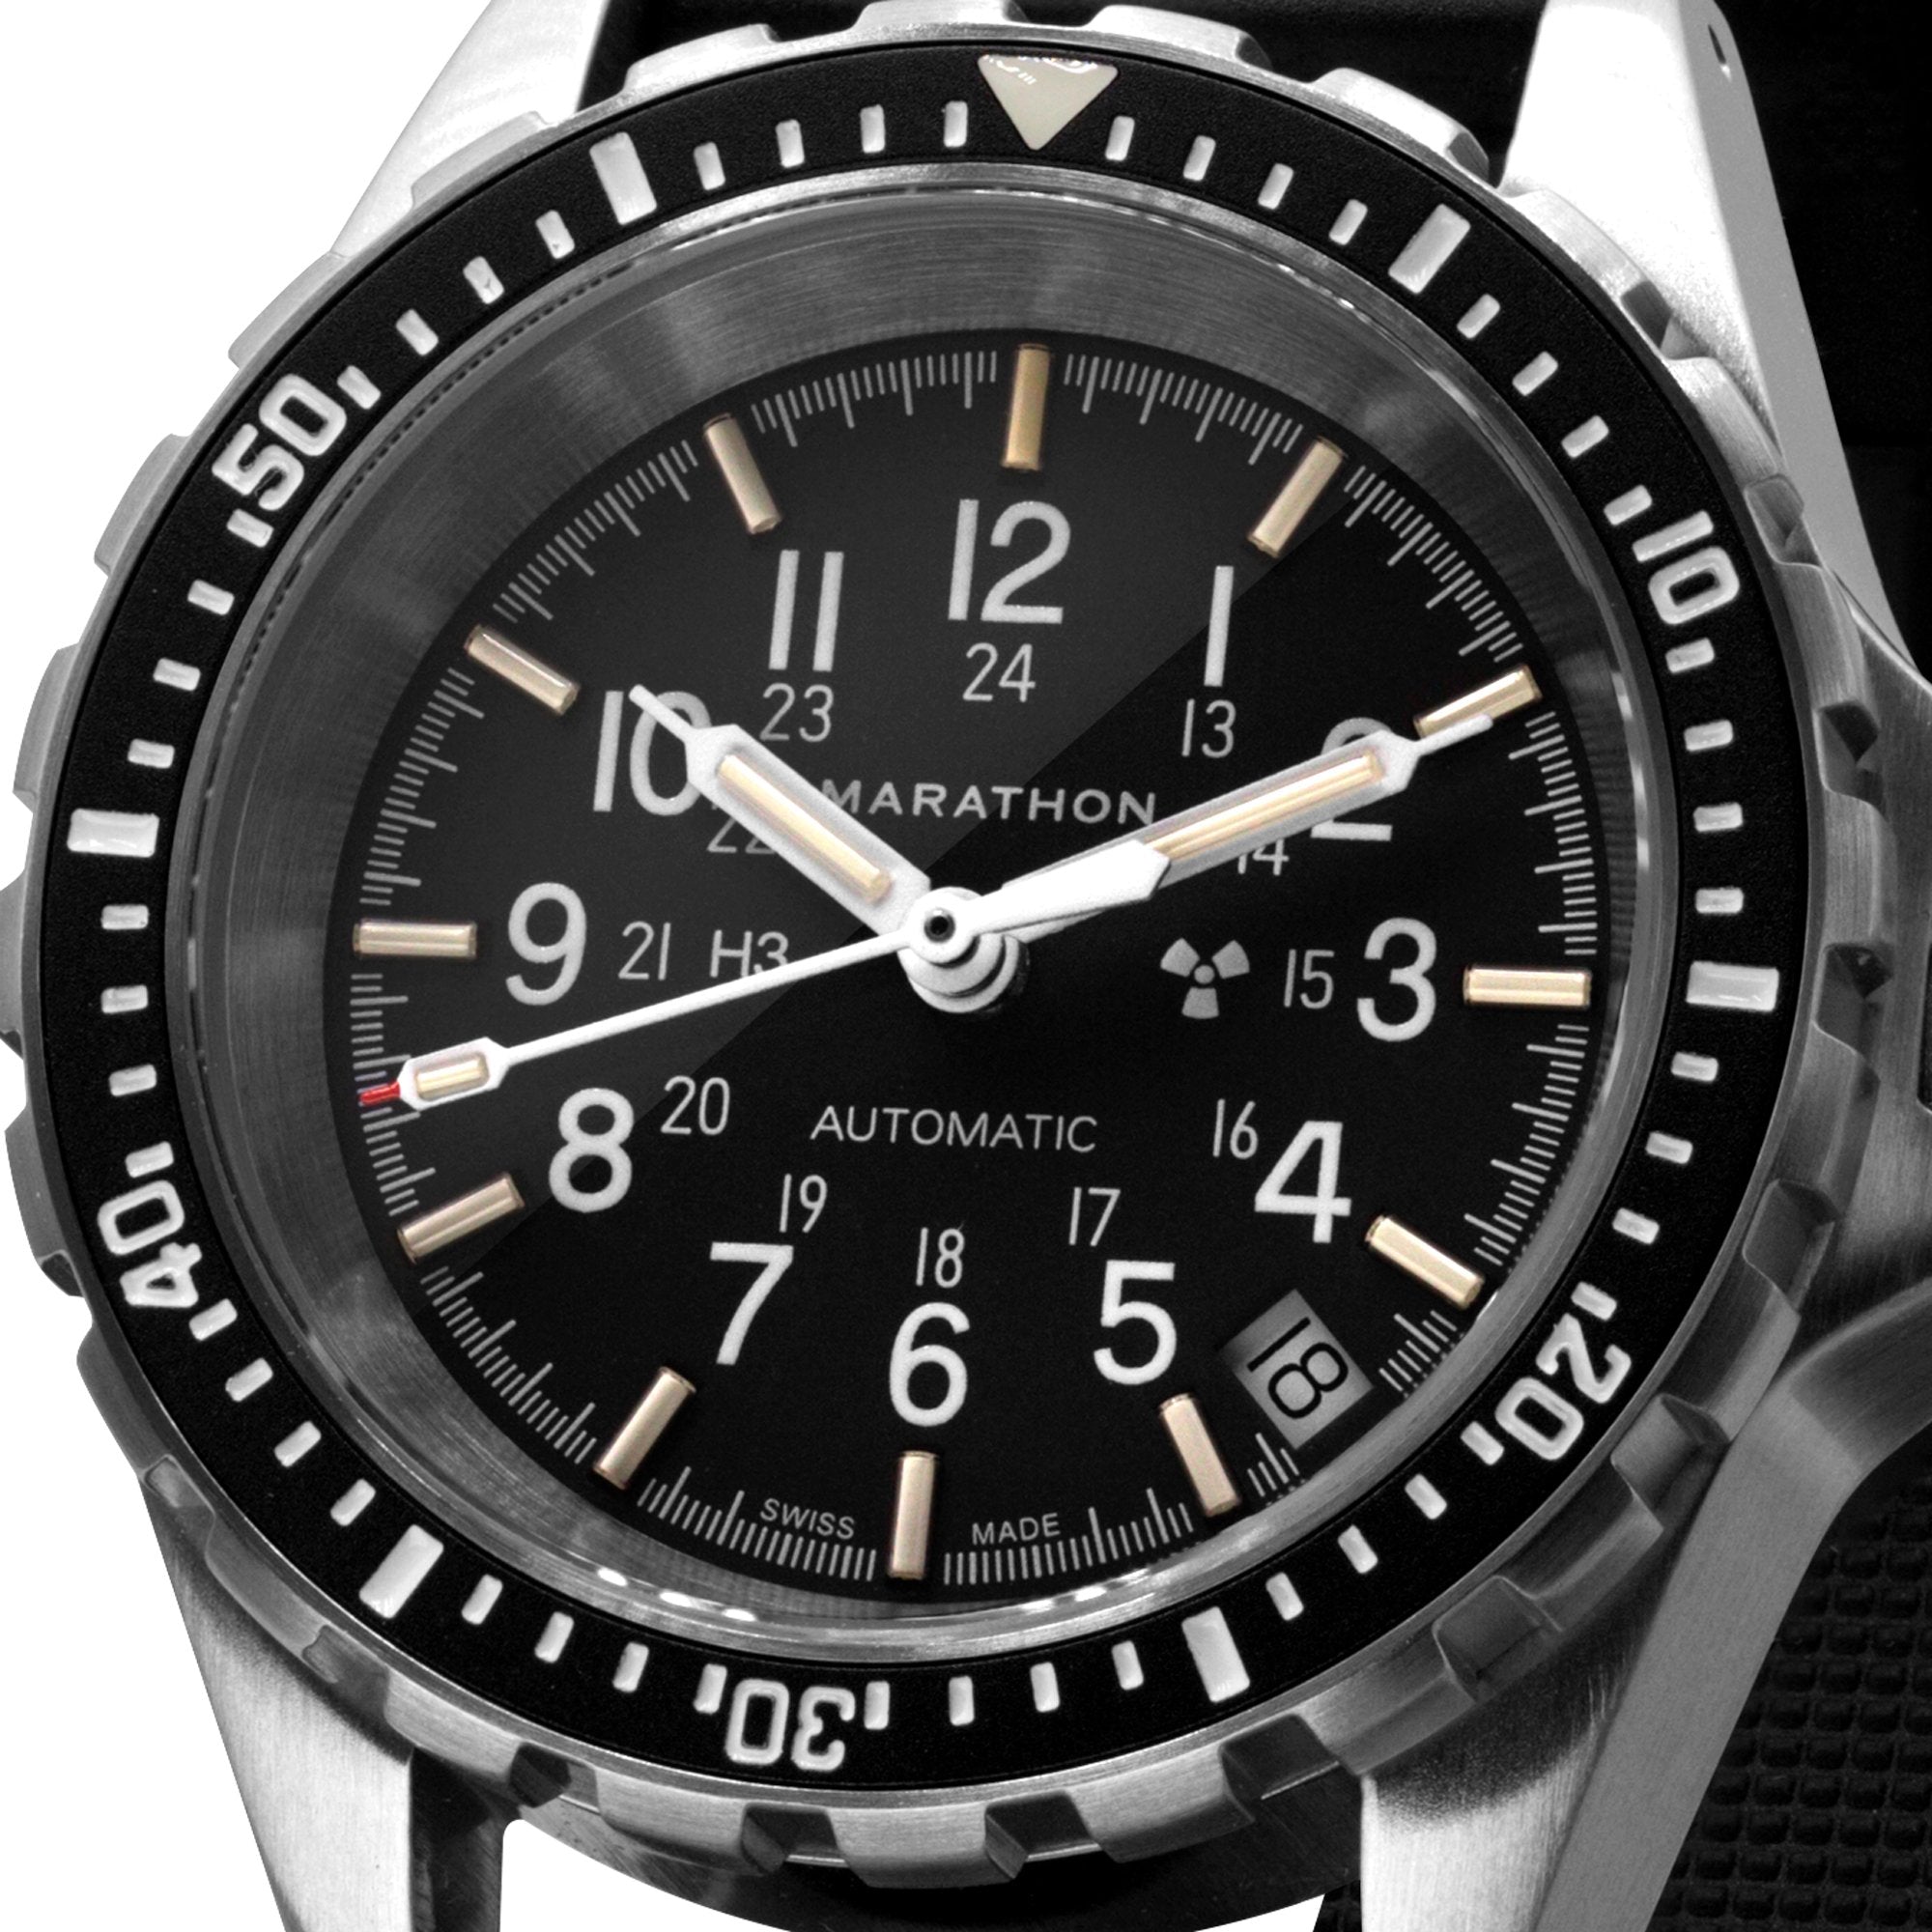 Automatyczny zegarek Medium Diver (MSAR Auto) bez oznaczeń rządowych – 36 mm – zegarek maratoński